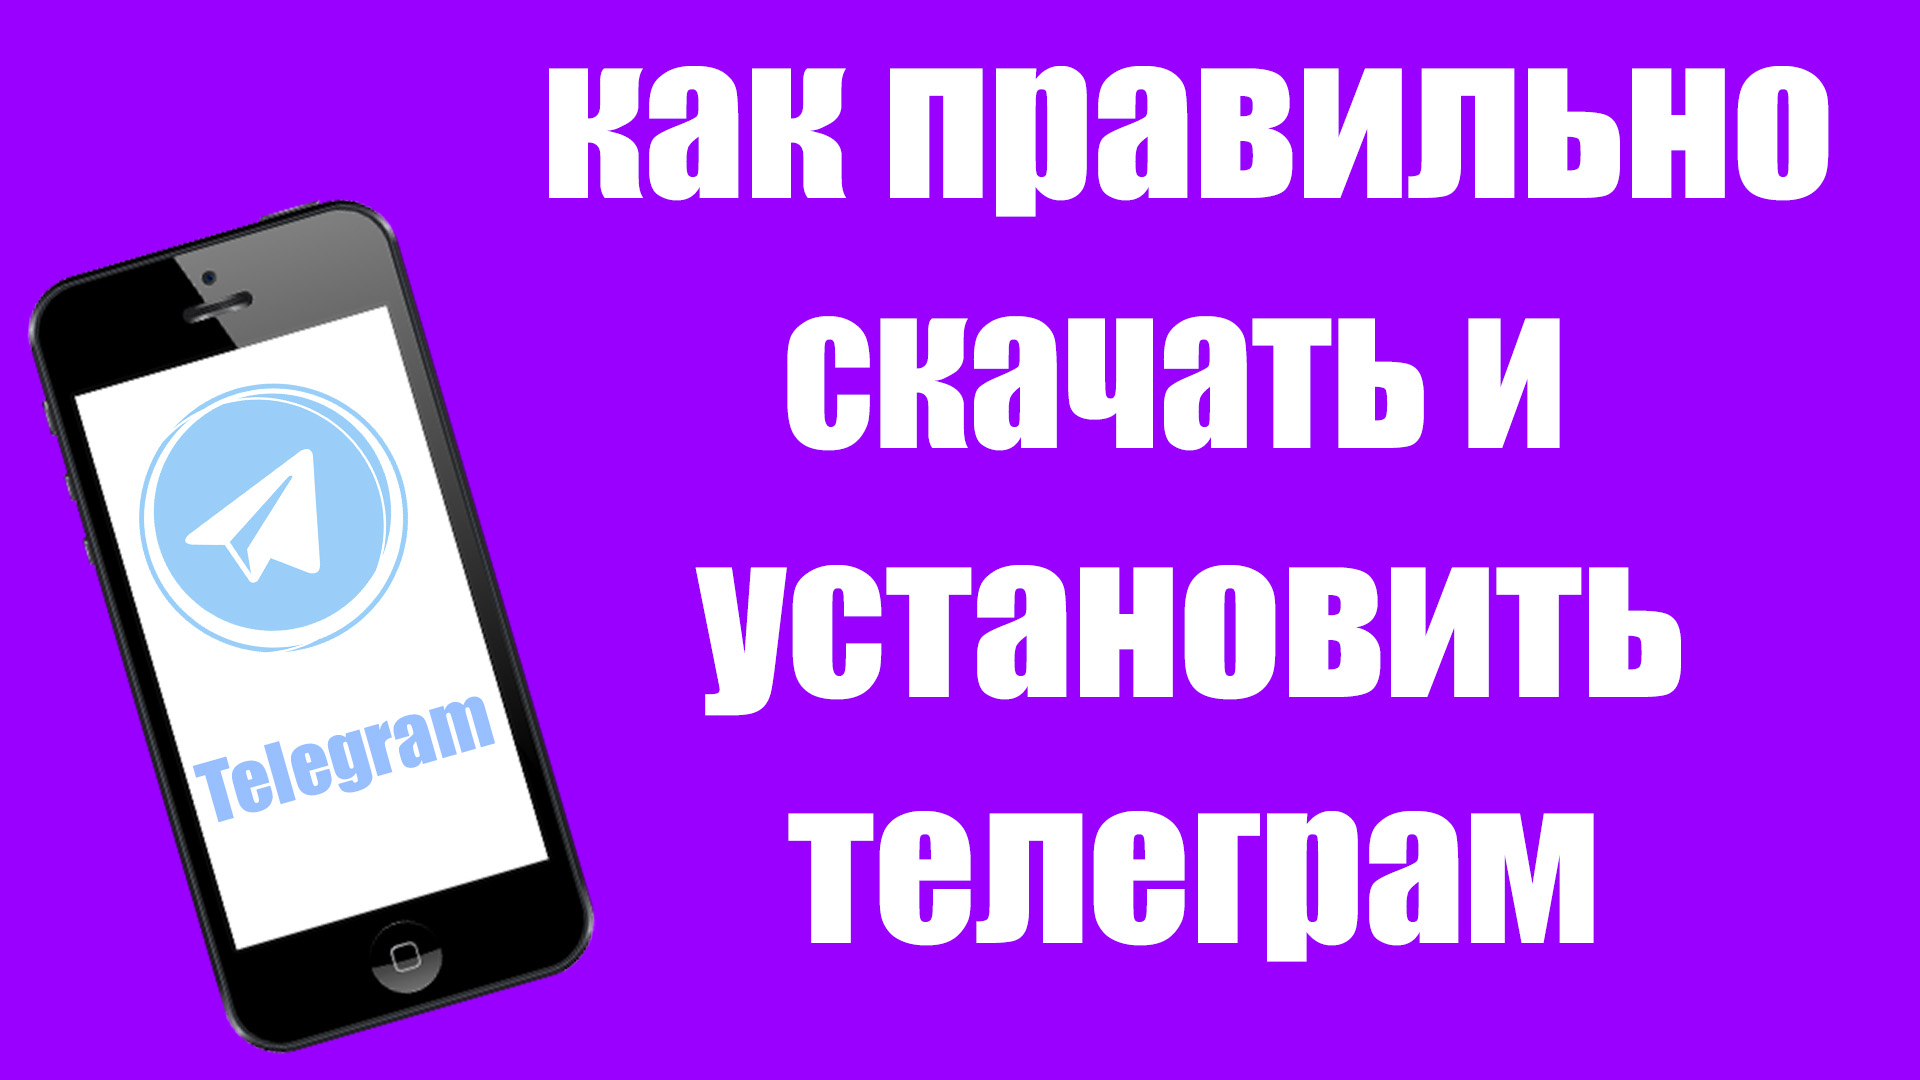 Перевести телеграмм на русский язык на андроид фото 29